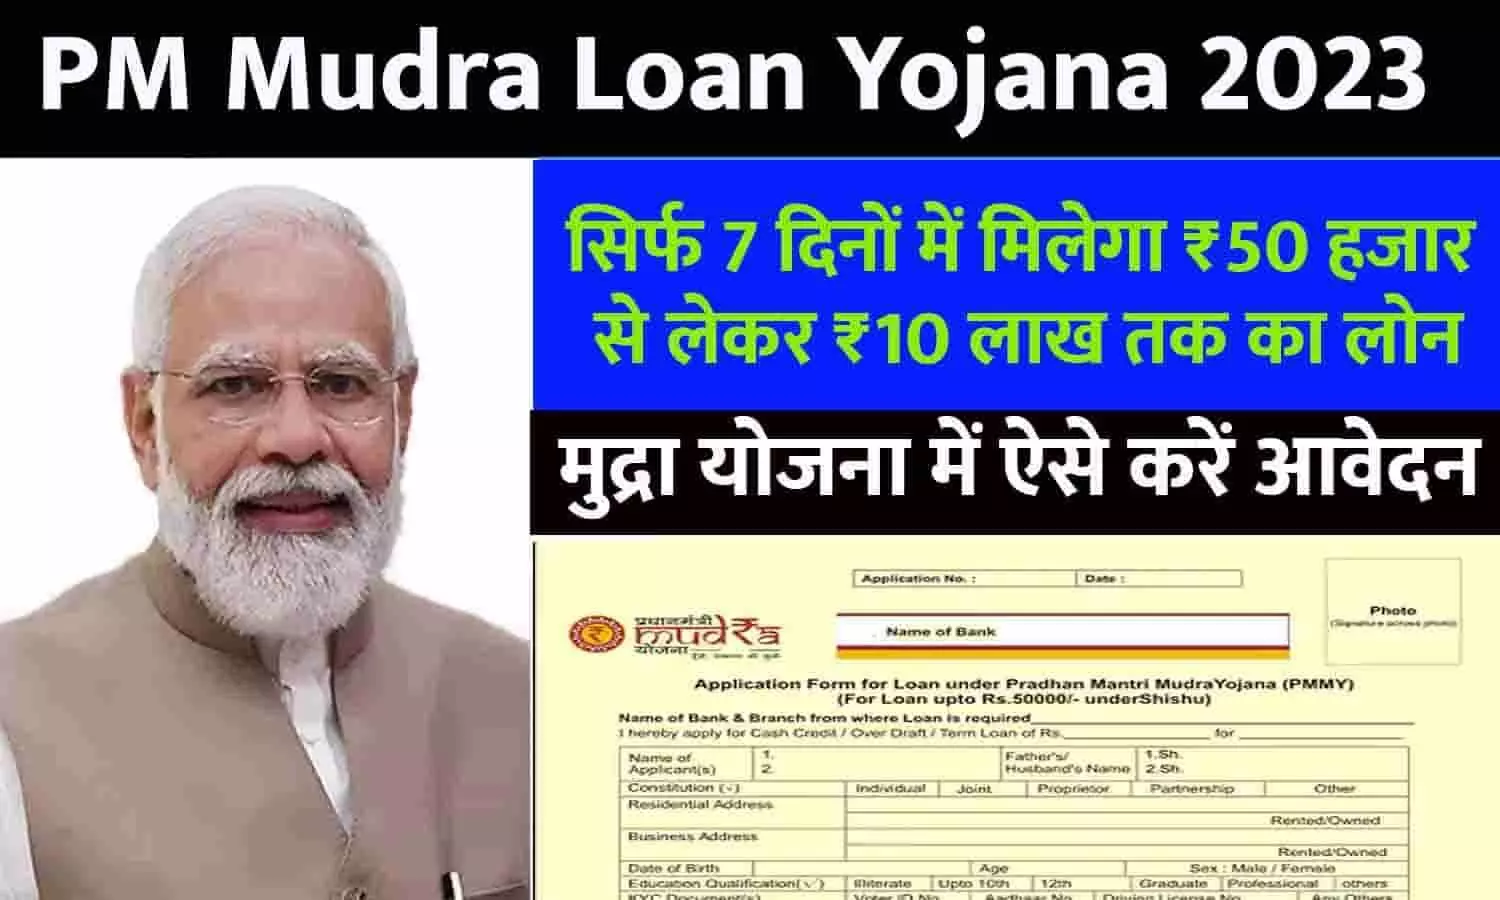 PM Mudra Loan Yojana In Hindi 2023: पीएम मुद्रा योजना में मिल रहा सिर्फ 7 दिनों में ₹50 हजार से लेकर ₹10 लाख तक का लोन, फटाफट जाने Latest Update